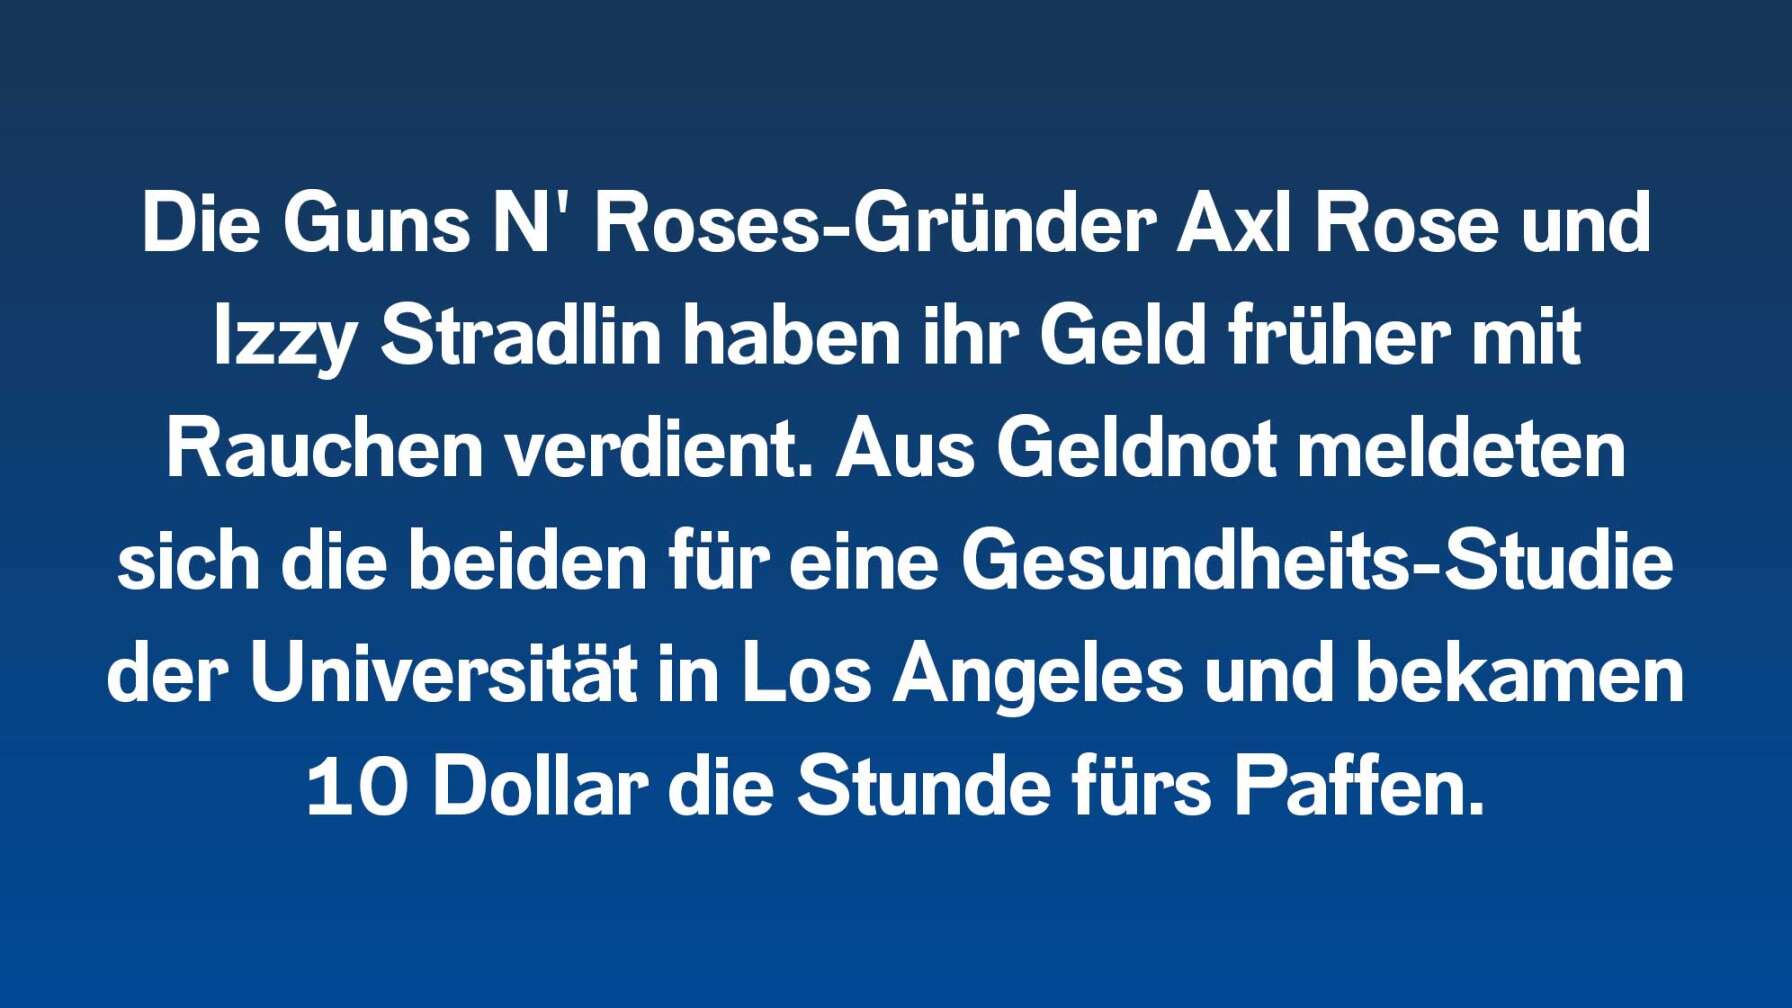 Die Guns N' Roses-Gründer Axl Rose und Izzy Stradlin haben ihr Geld früher mit Rauchen verdient. Aus Geldnot meldeten sich die beiden für eine Gesundheits-Studie der Universität in Los Angeles und bekamen 10 Dollar die Stunde fürs Paffen.